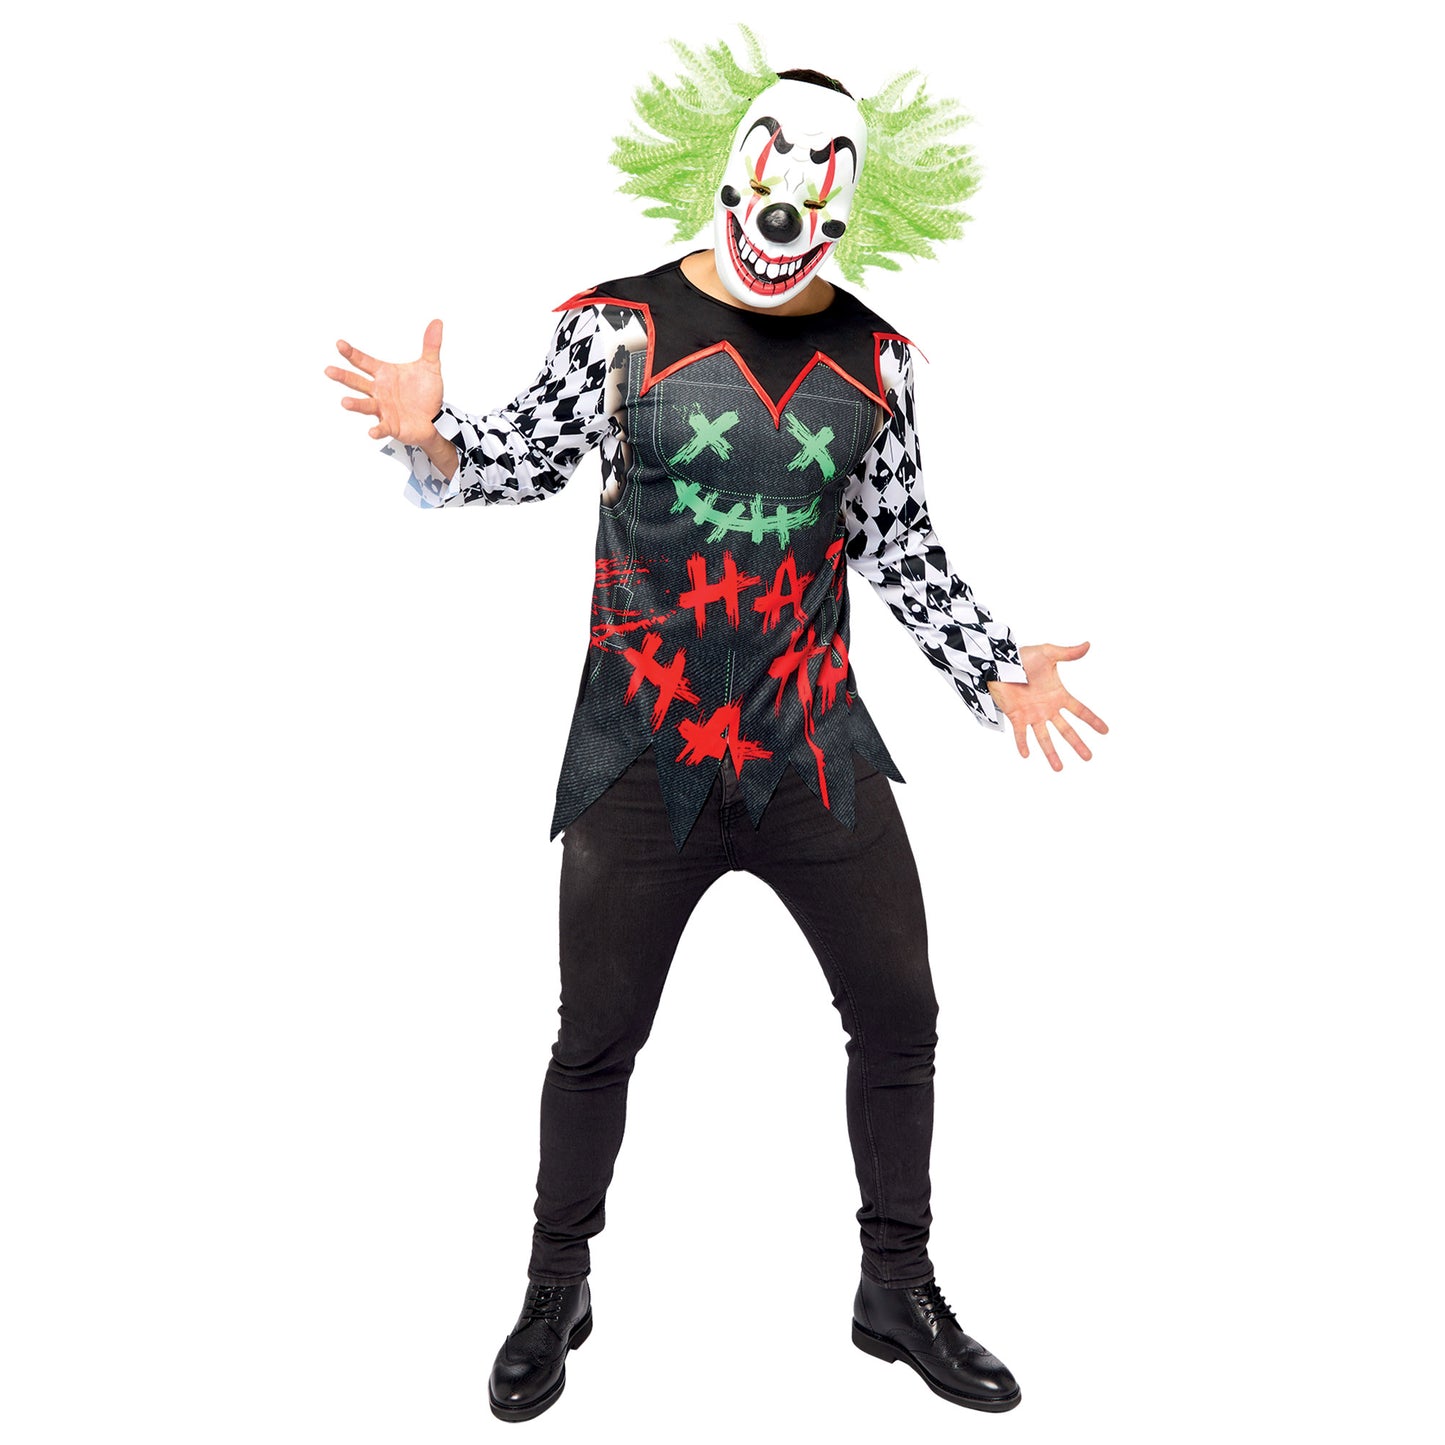 Costume Haha Clown Set Men's Adult Plus Size